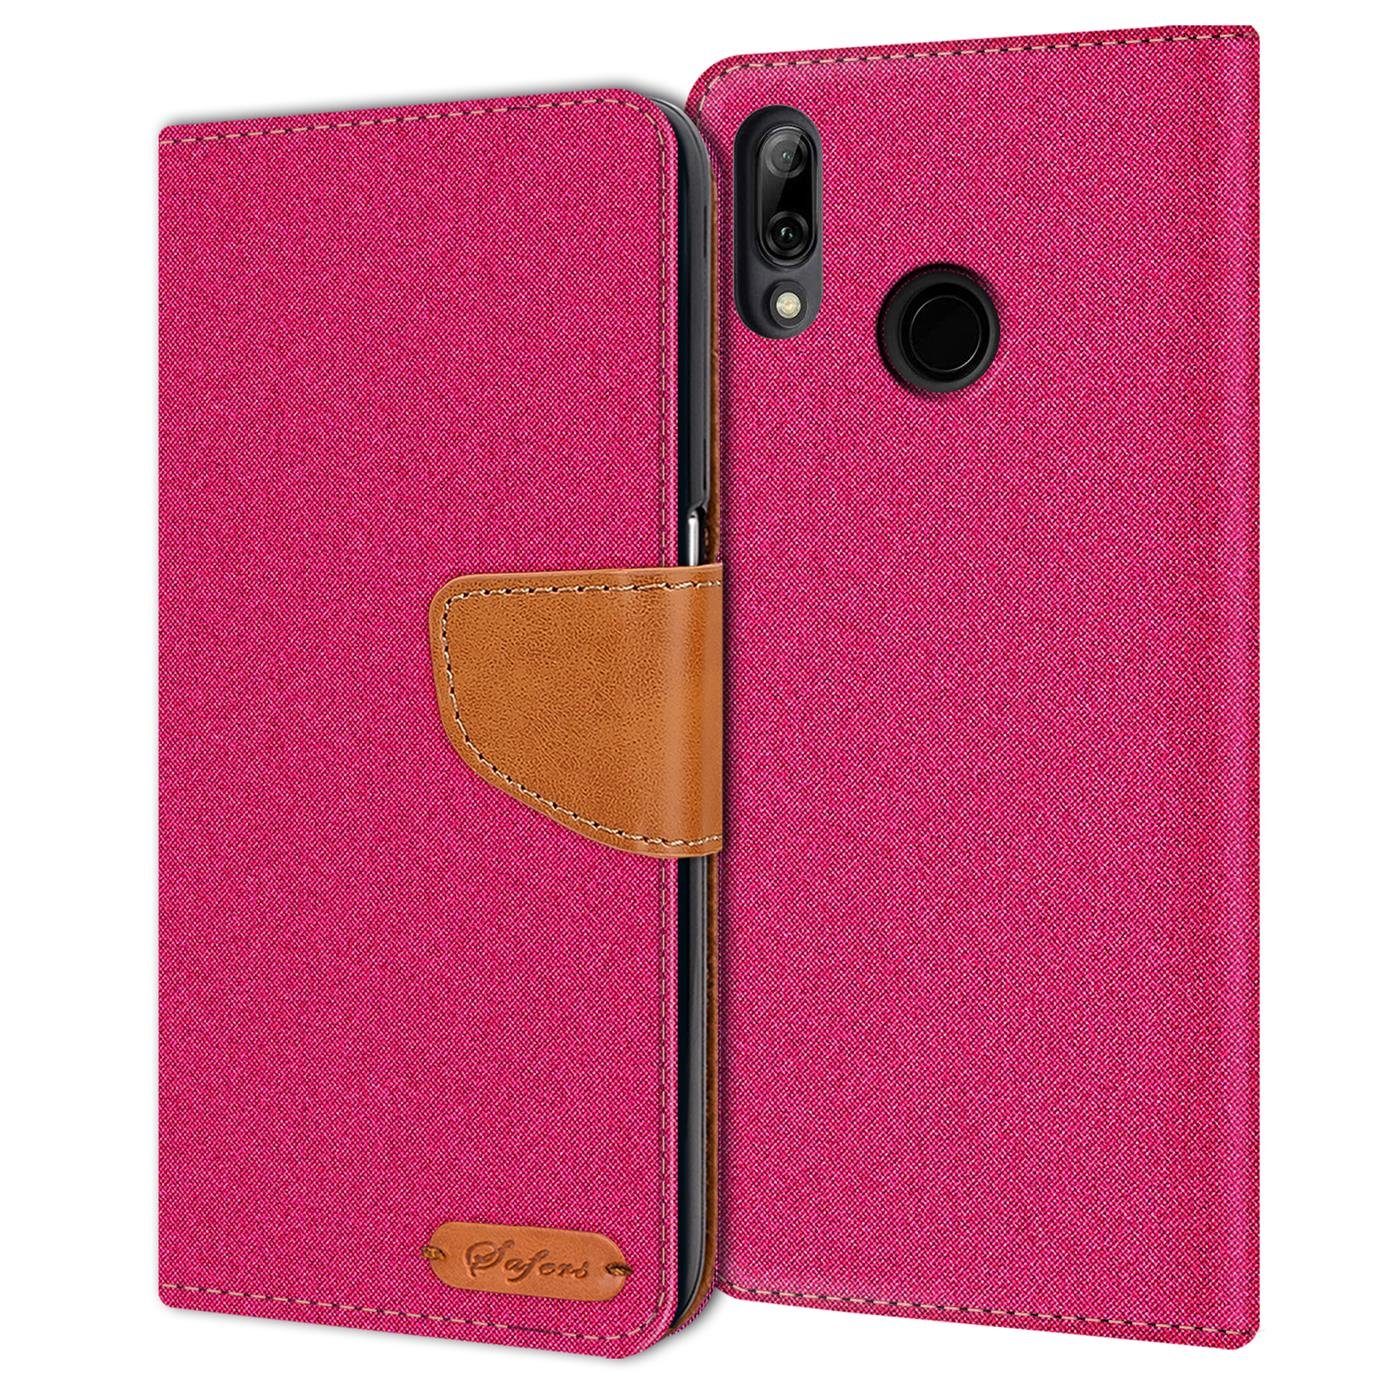 CoolGadget Handyhülle Denim Schutzhülle Flip Case für Huawei P20 Lite 5,8 Zoll, Book Cover Handy Tasche Hülle für P20 Lite Klapphülle